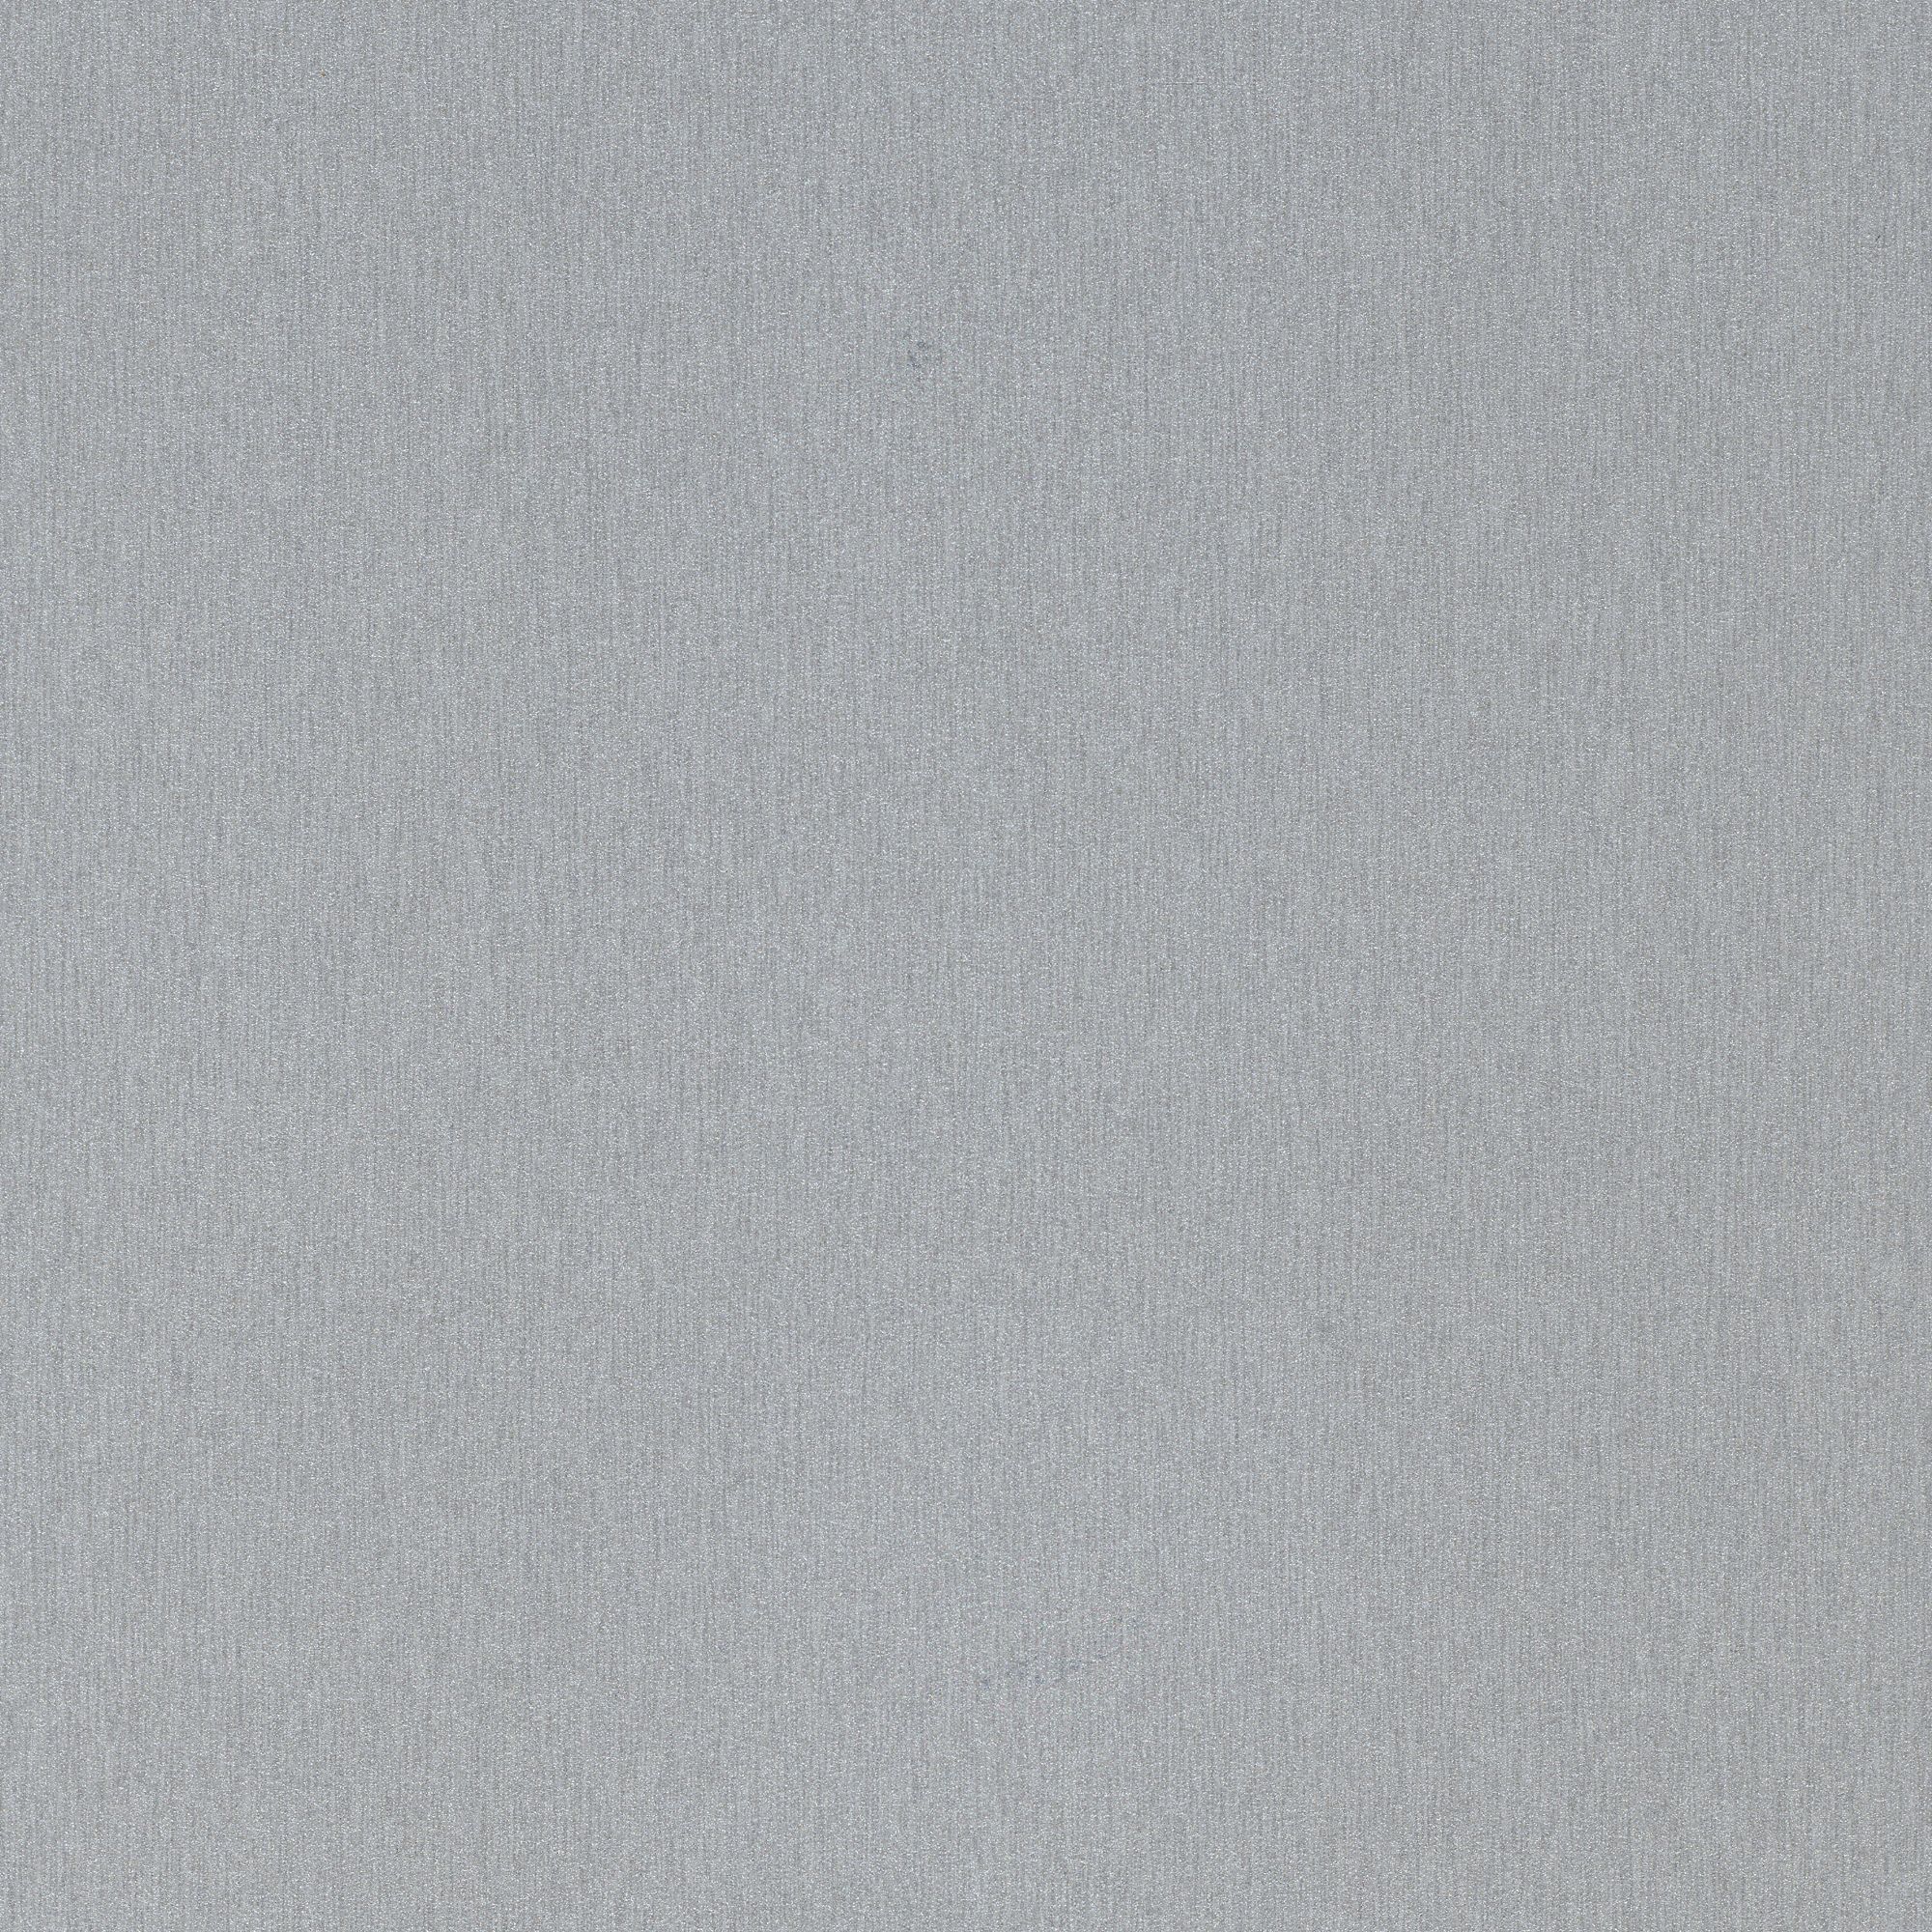 Splashwall Impressions Gloss Metallic grey Clean cut 2 sided Shower Panel kit (L)2420mm (W)1200mm (T)11mm